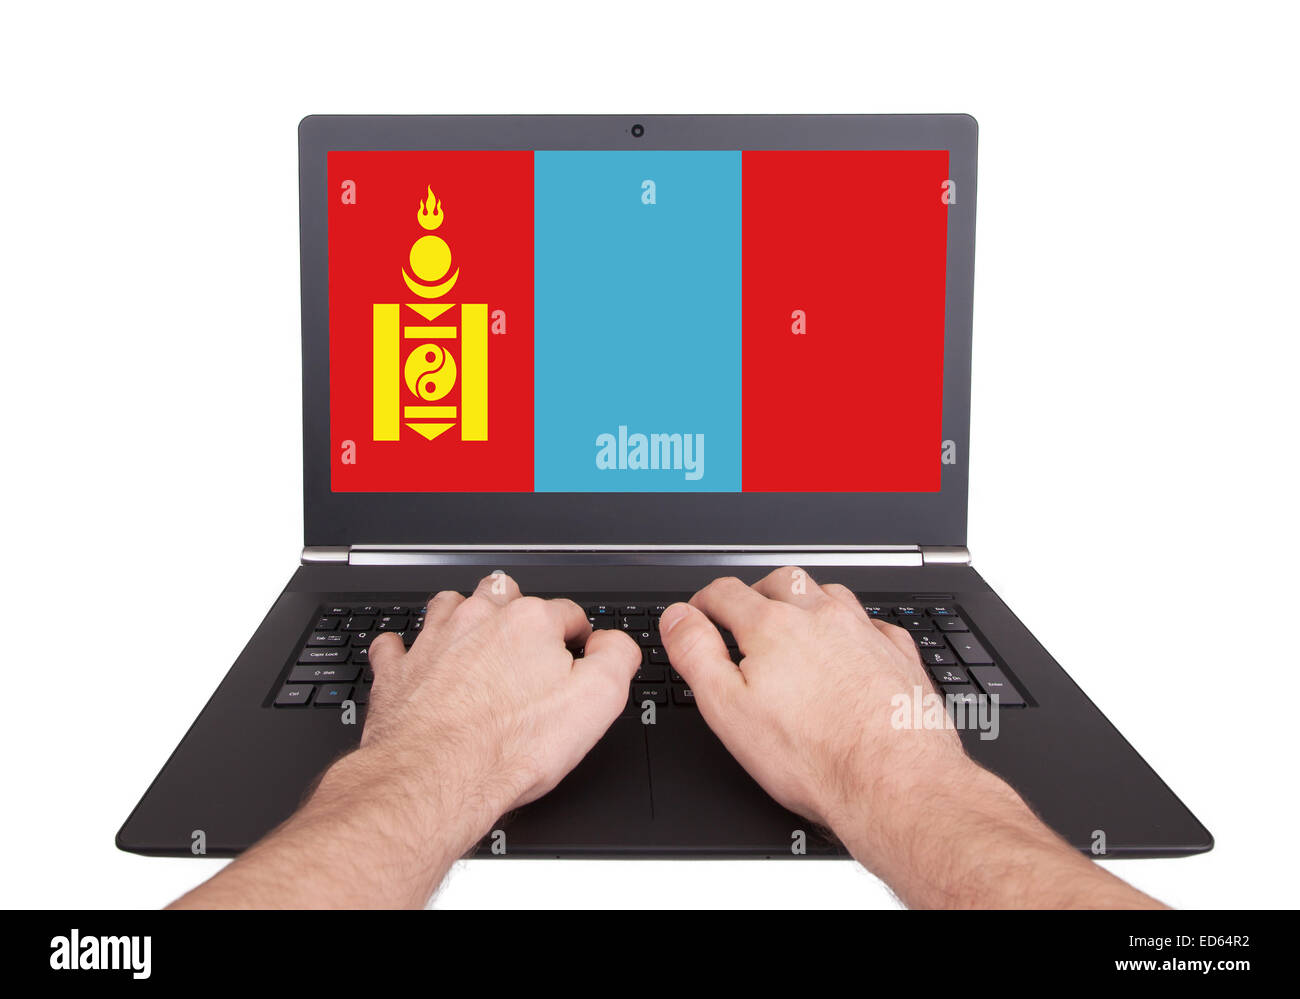 Mains working on laptop montrant à l'écran le drapeau de la Mongolie Banque D'Images